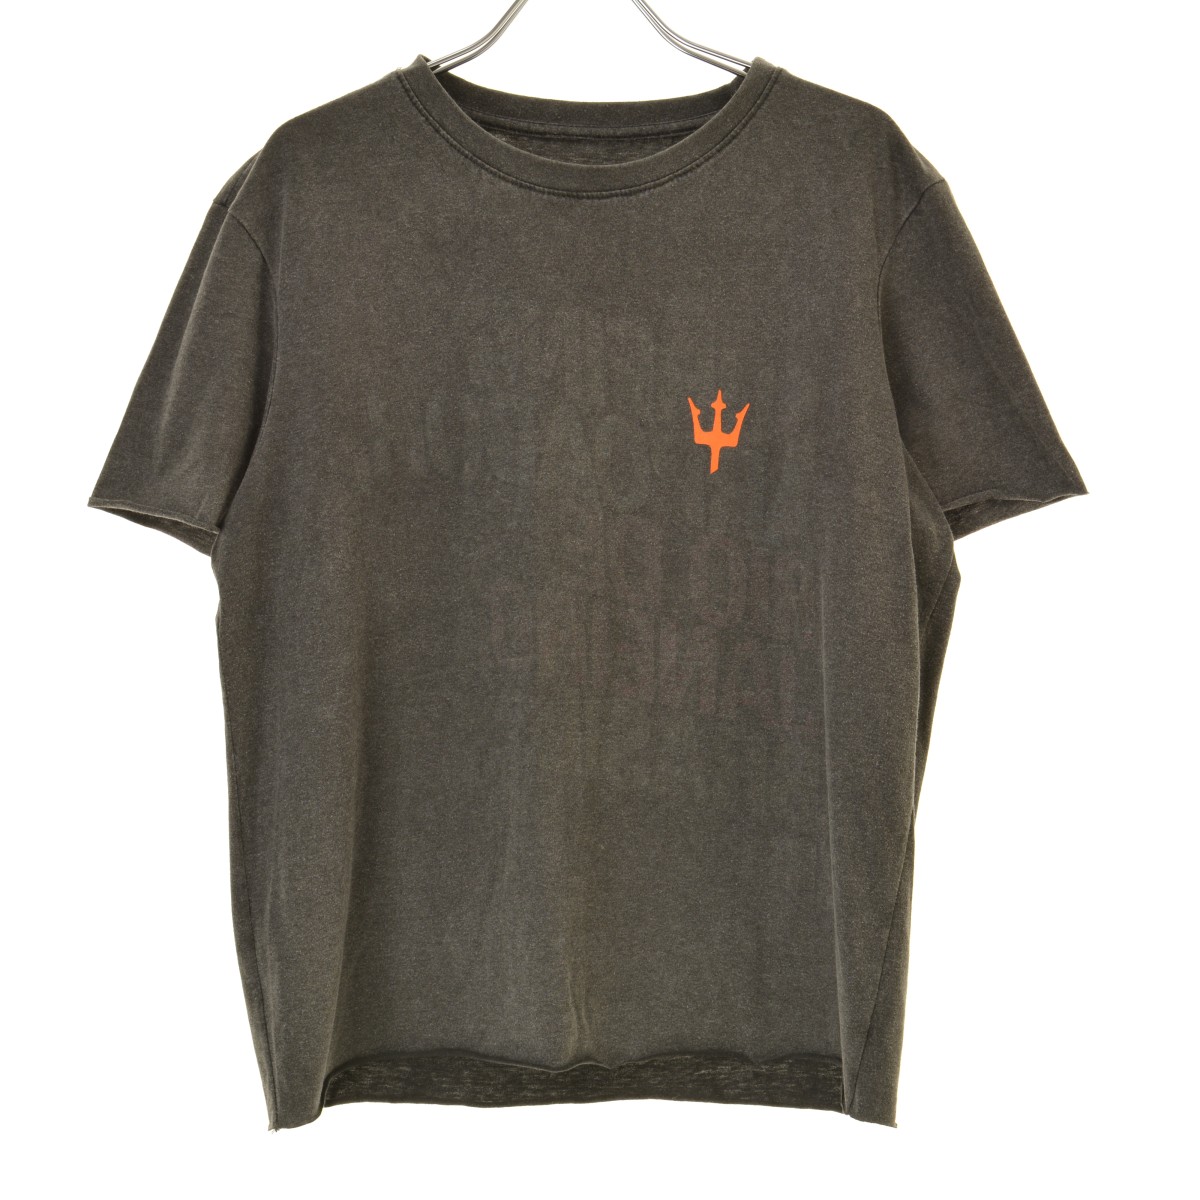 OSKLEN / オスクレン 半袖Tシャツ -ブランド古着の買取販売カンフル